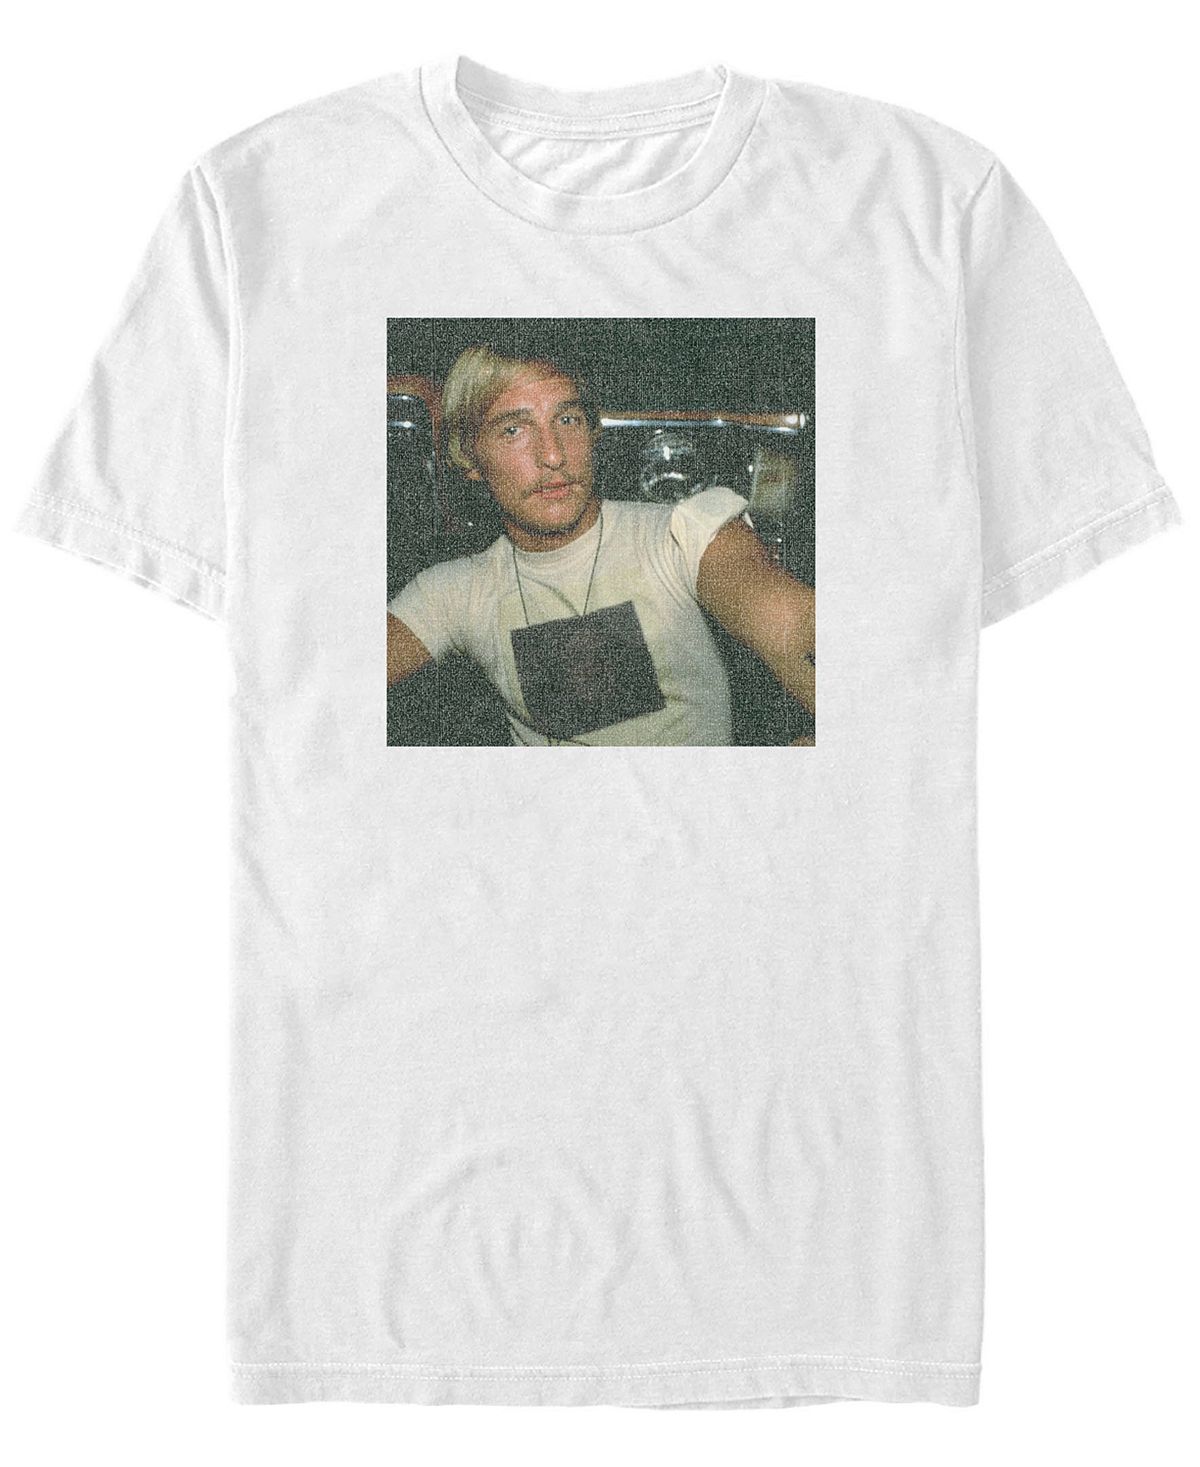 Мужская футболка с коротким рукавом в стиле ретро с изображением дэвида вудерсона Fifth Sun, белый